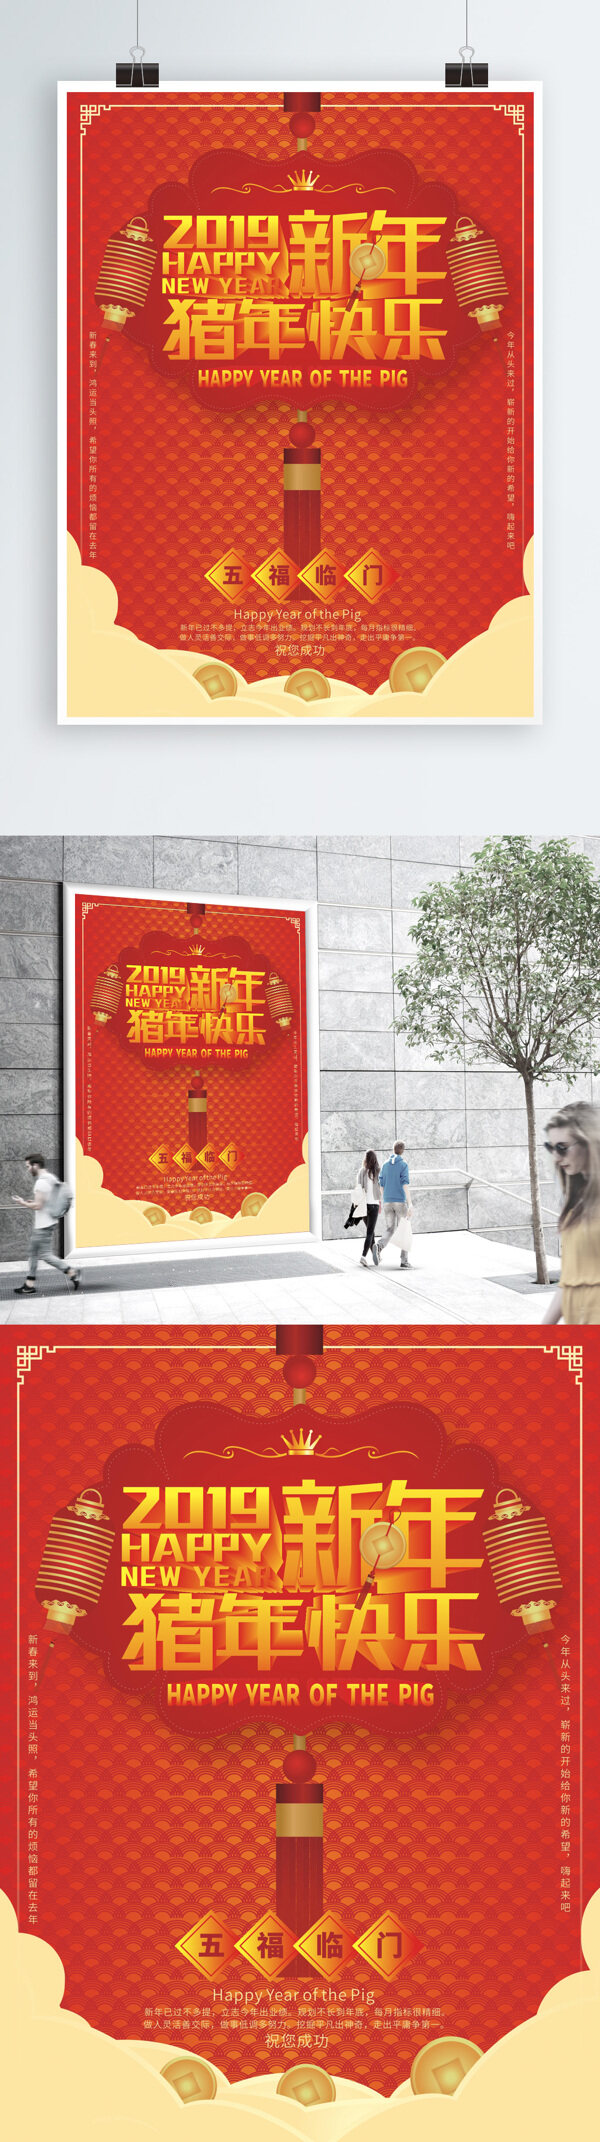 创意中国风立体字造型海报